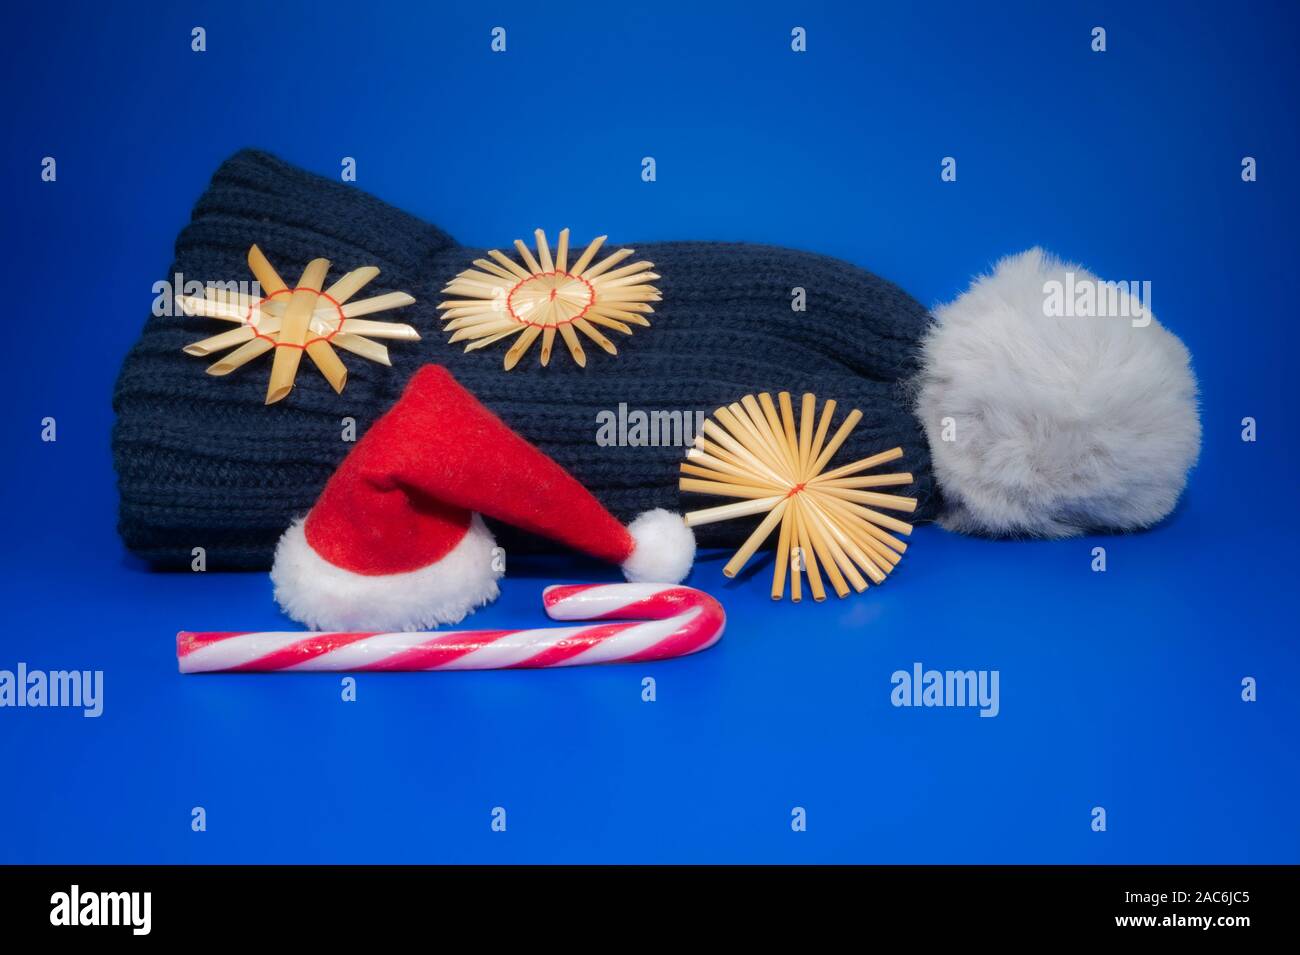 Cool hiver bleu fond de Noël avec bonnet de laine tricoté à la main, flocons de paille de canne, et un rouge Santa hat avec copie sp Banque D'Images